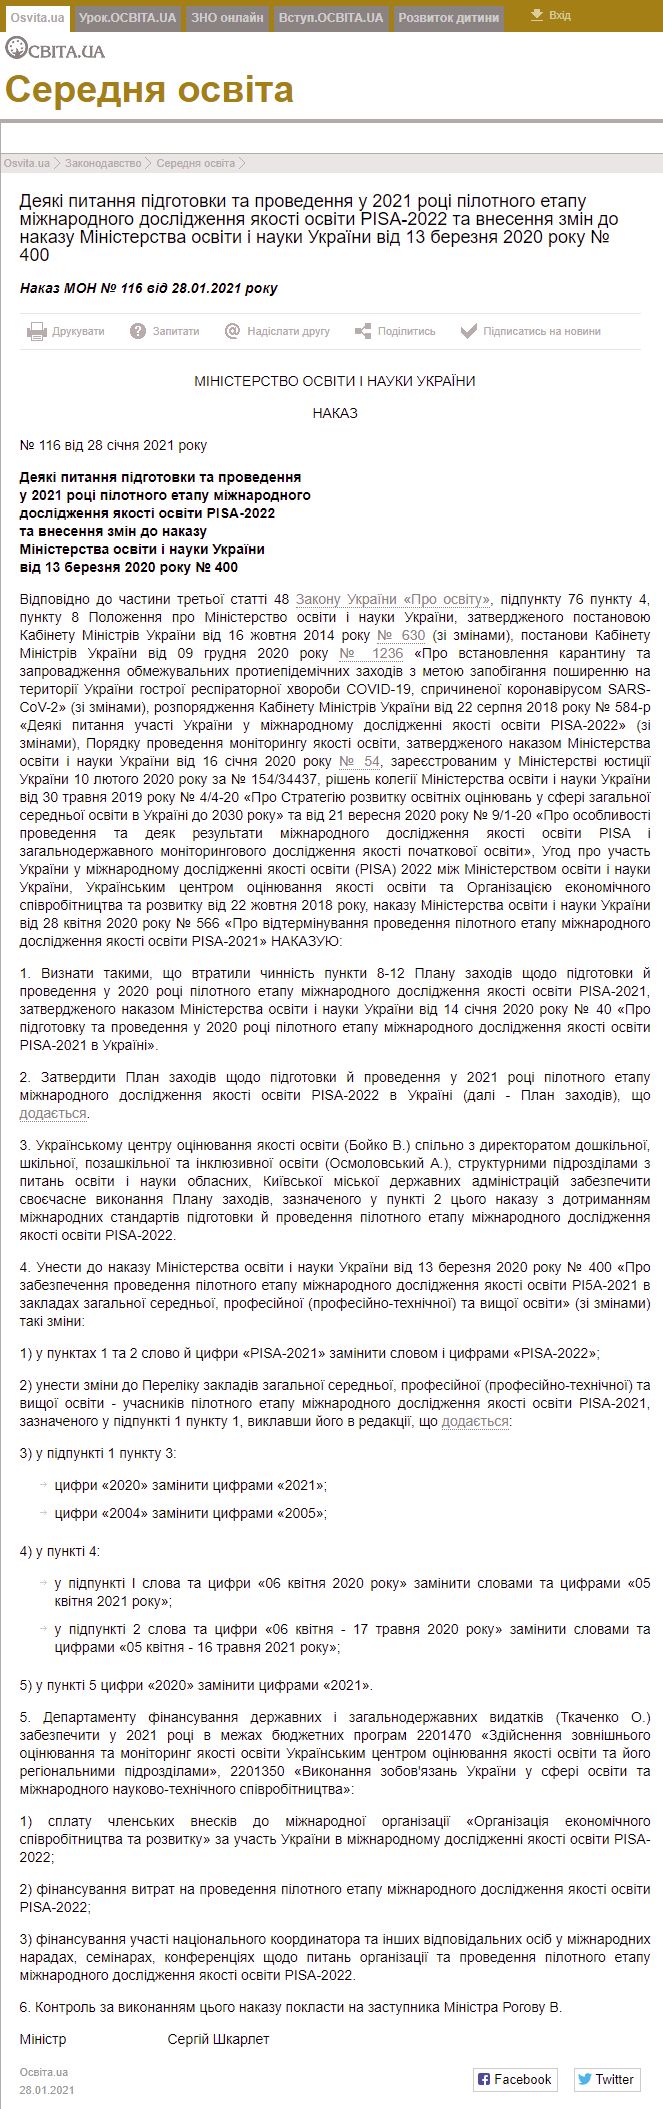 http://osvita.ua/legislation/Ser_osv/80076/